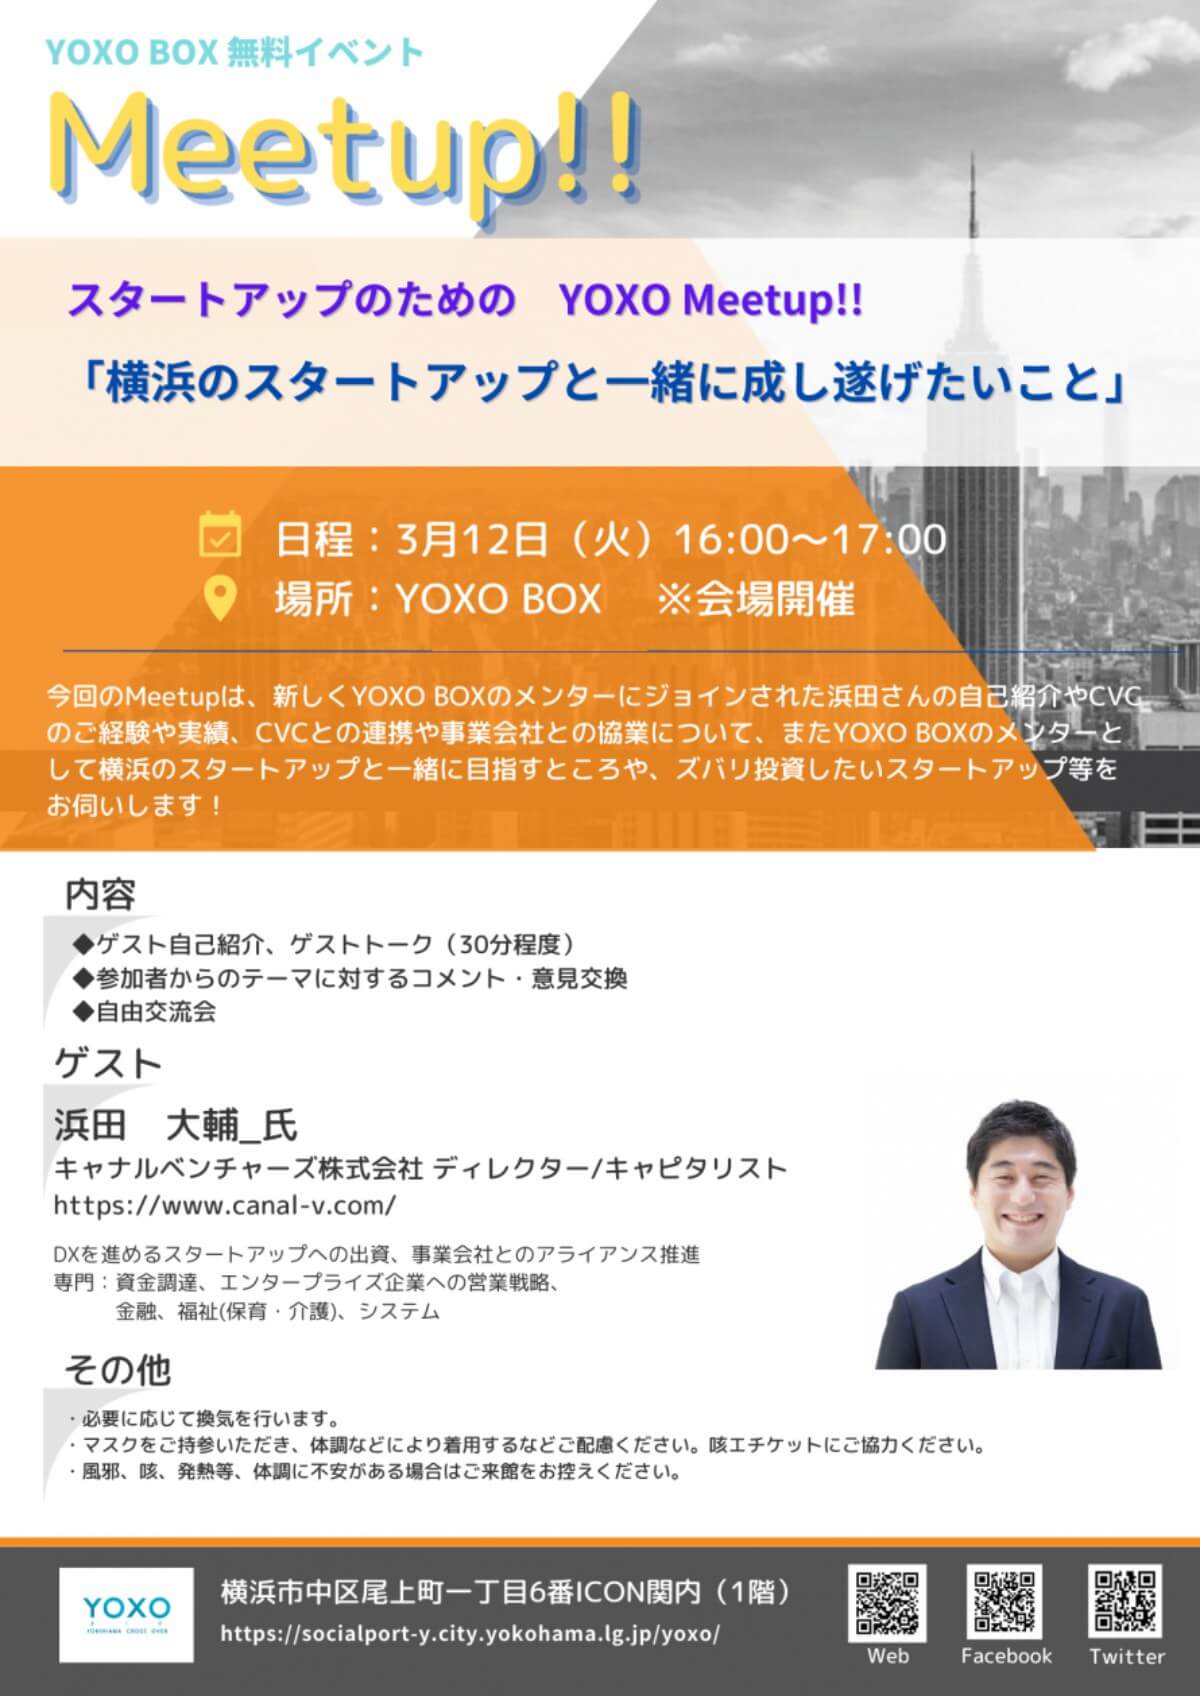 【3/12】スタートアップのためのYOXO Meetup!!「横浜のスタートアップと一緒に成し遂げたいこと」